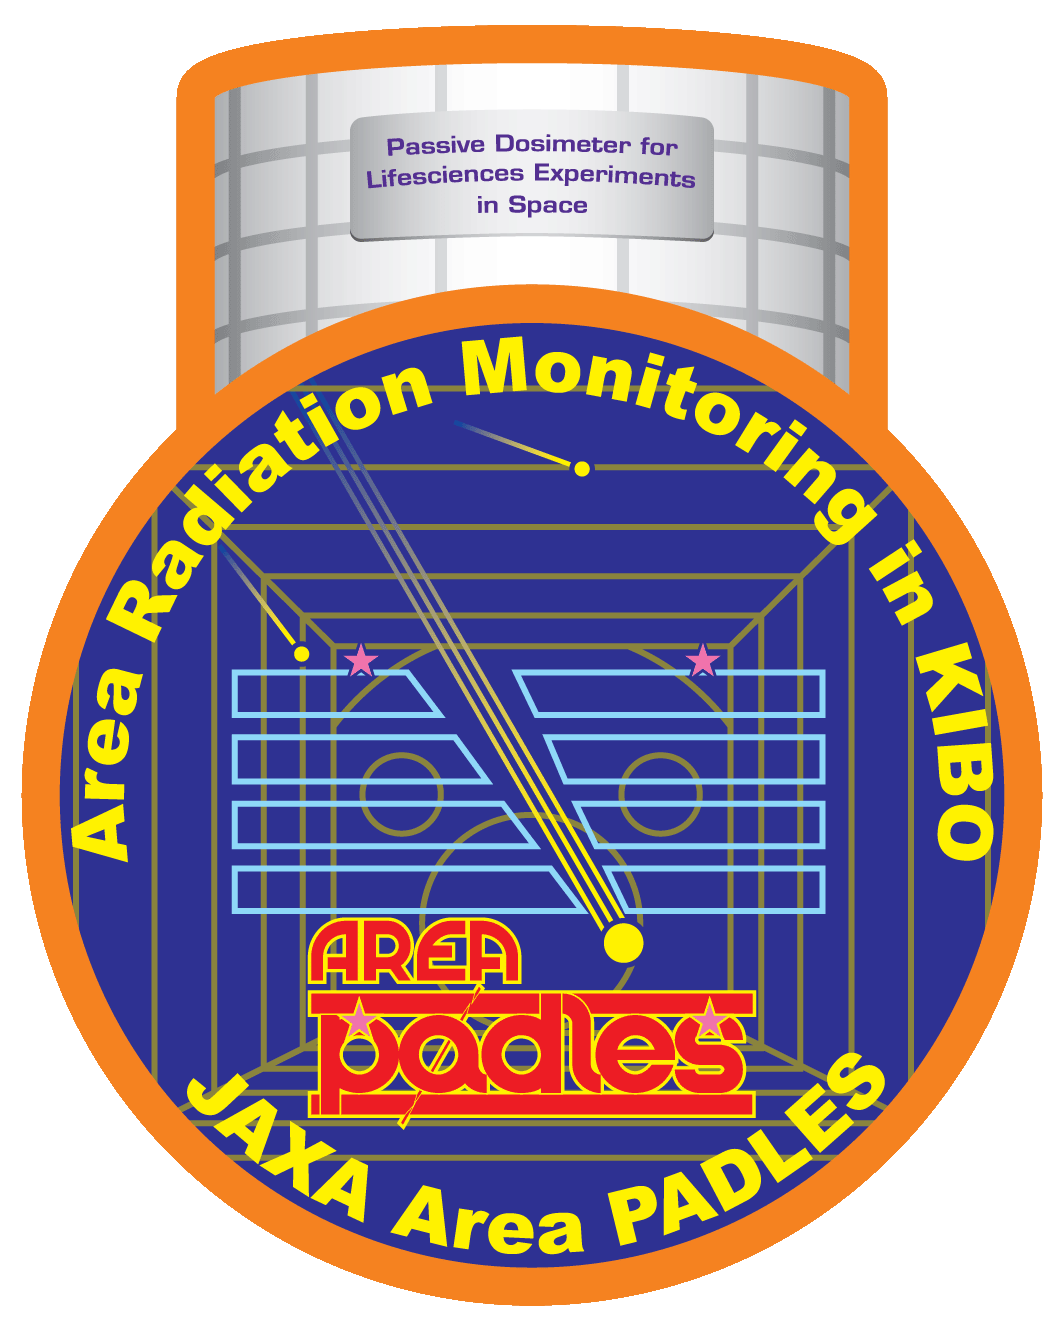 Area PADLES patch logo